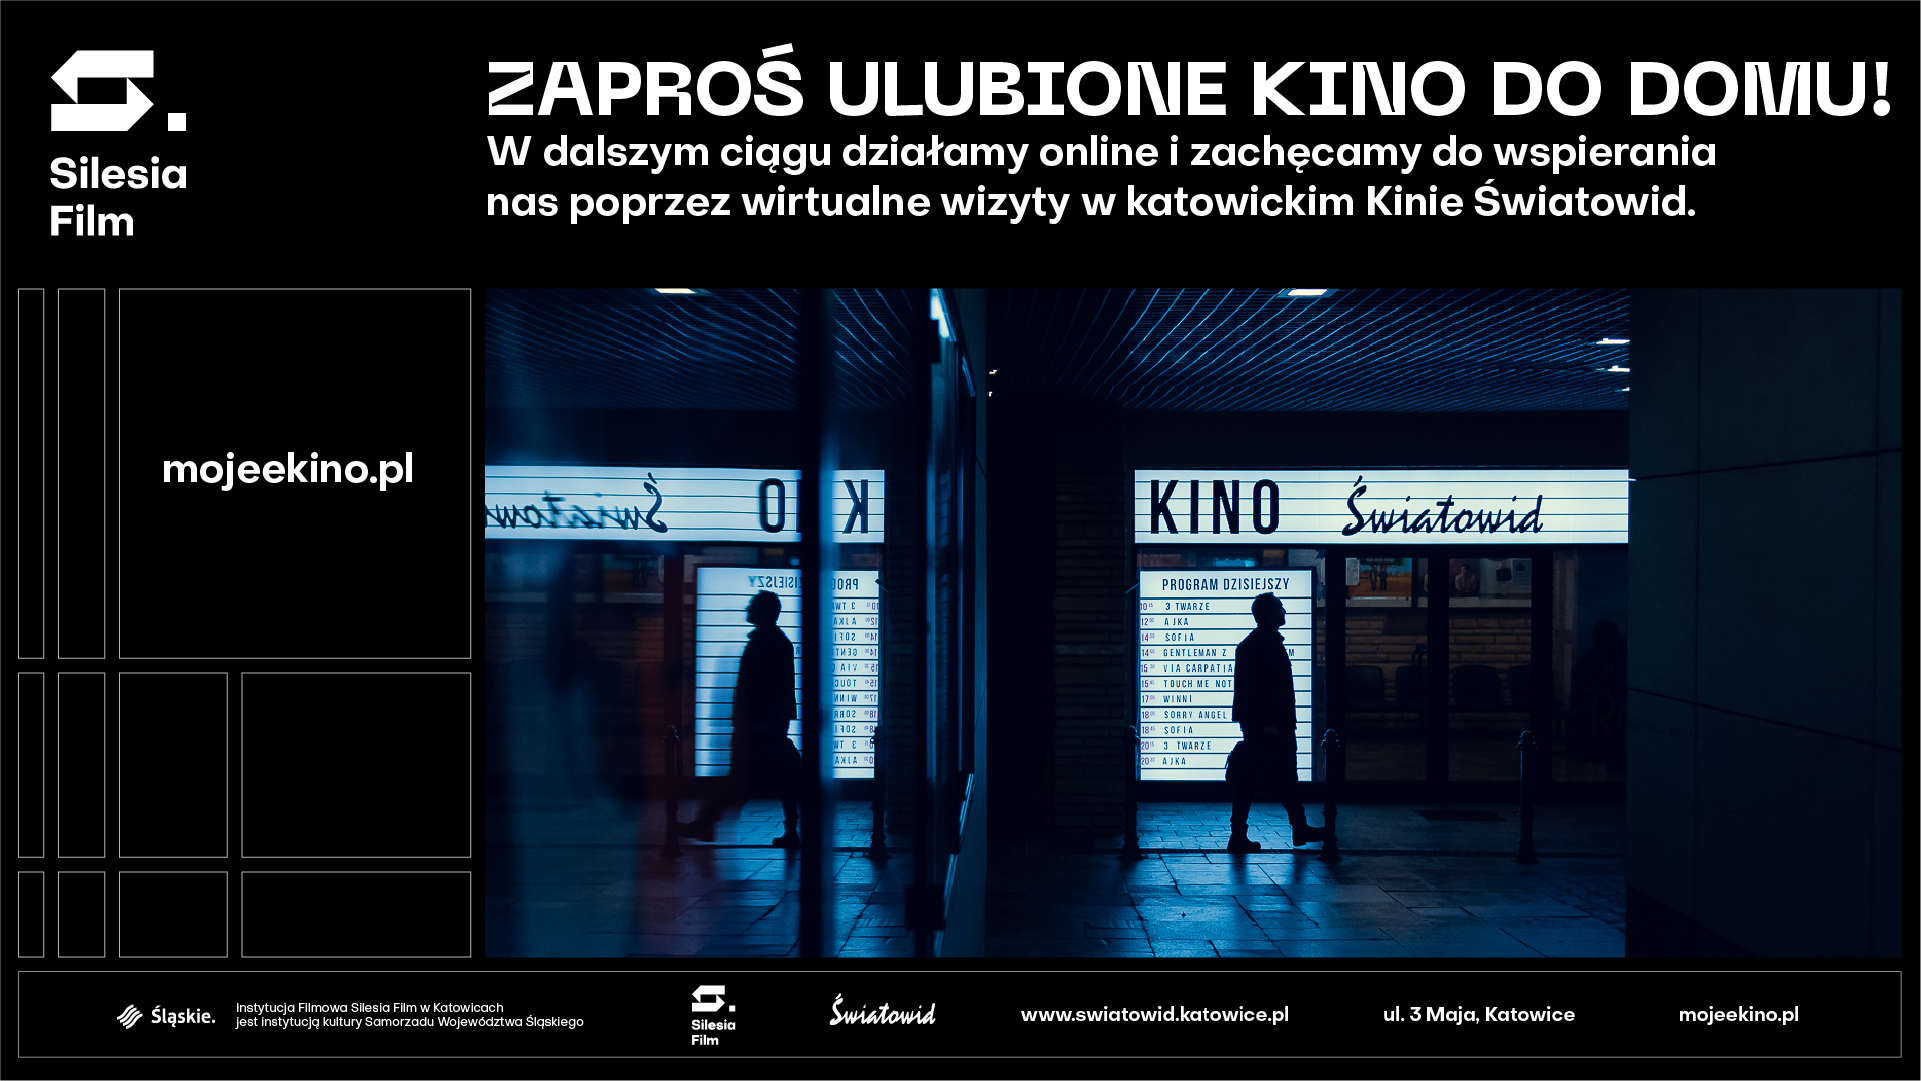 Plansza informująca o platformie mojeekino.pl. U góry napis: "Zaproś ulubione kino do domu!